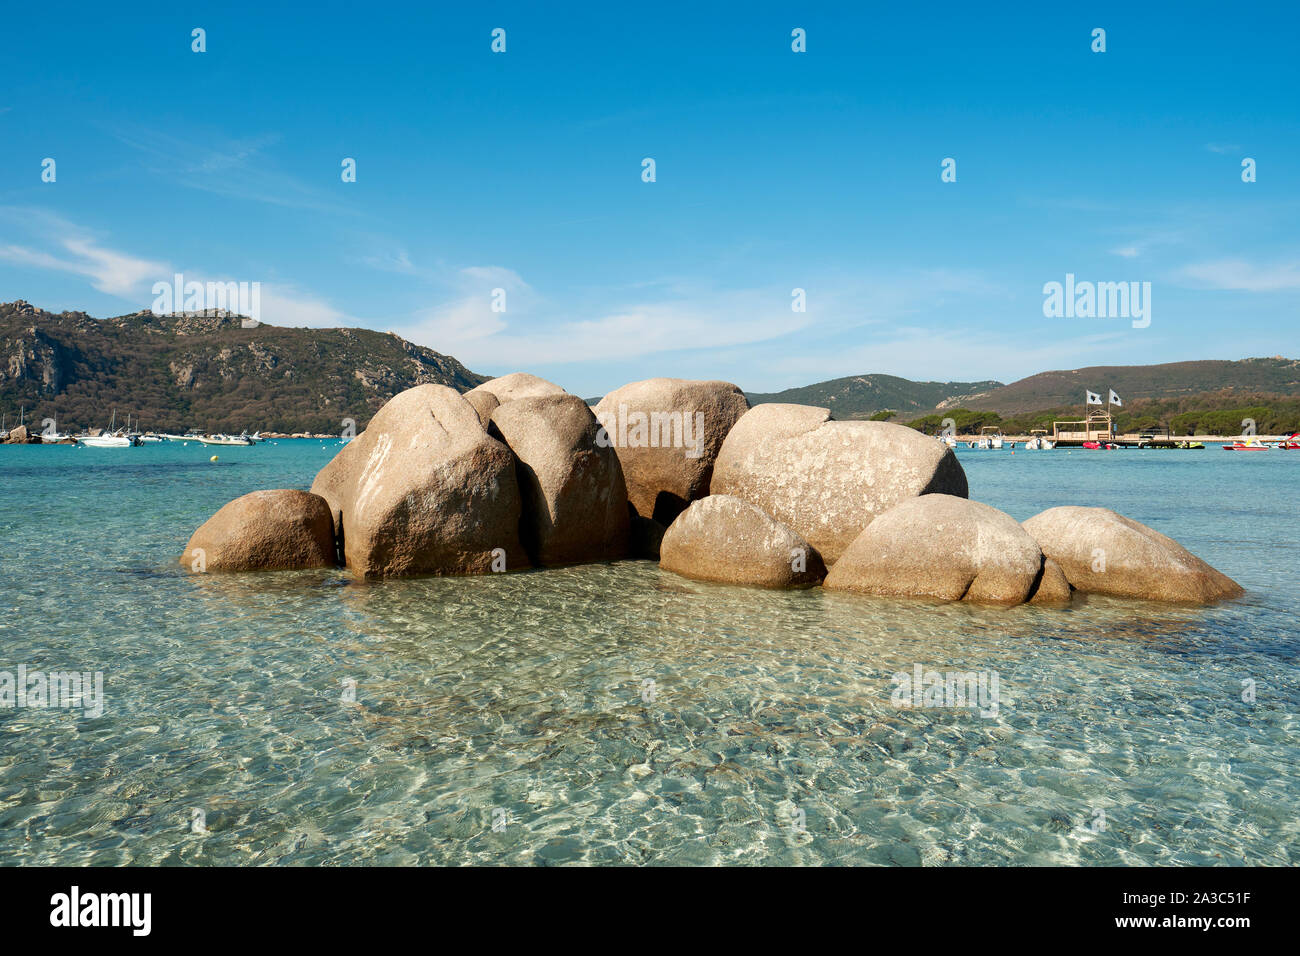 El agua clara y las rocas de arena blanca de la playa de Santa Giulia / Playa Santa Giulia, Golfe de Santa Giulia, Porto-Vecchio sudeste de Córcega Francia. Foto de stock